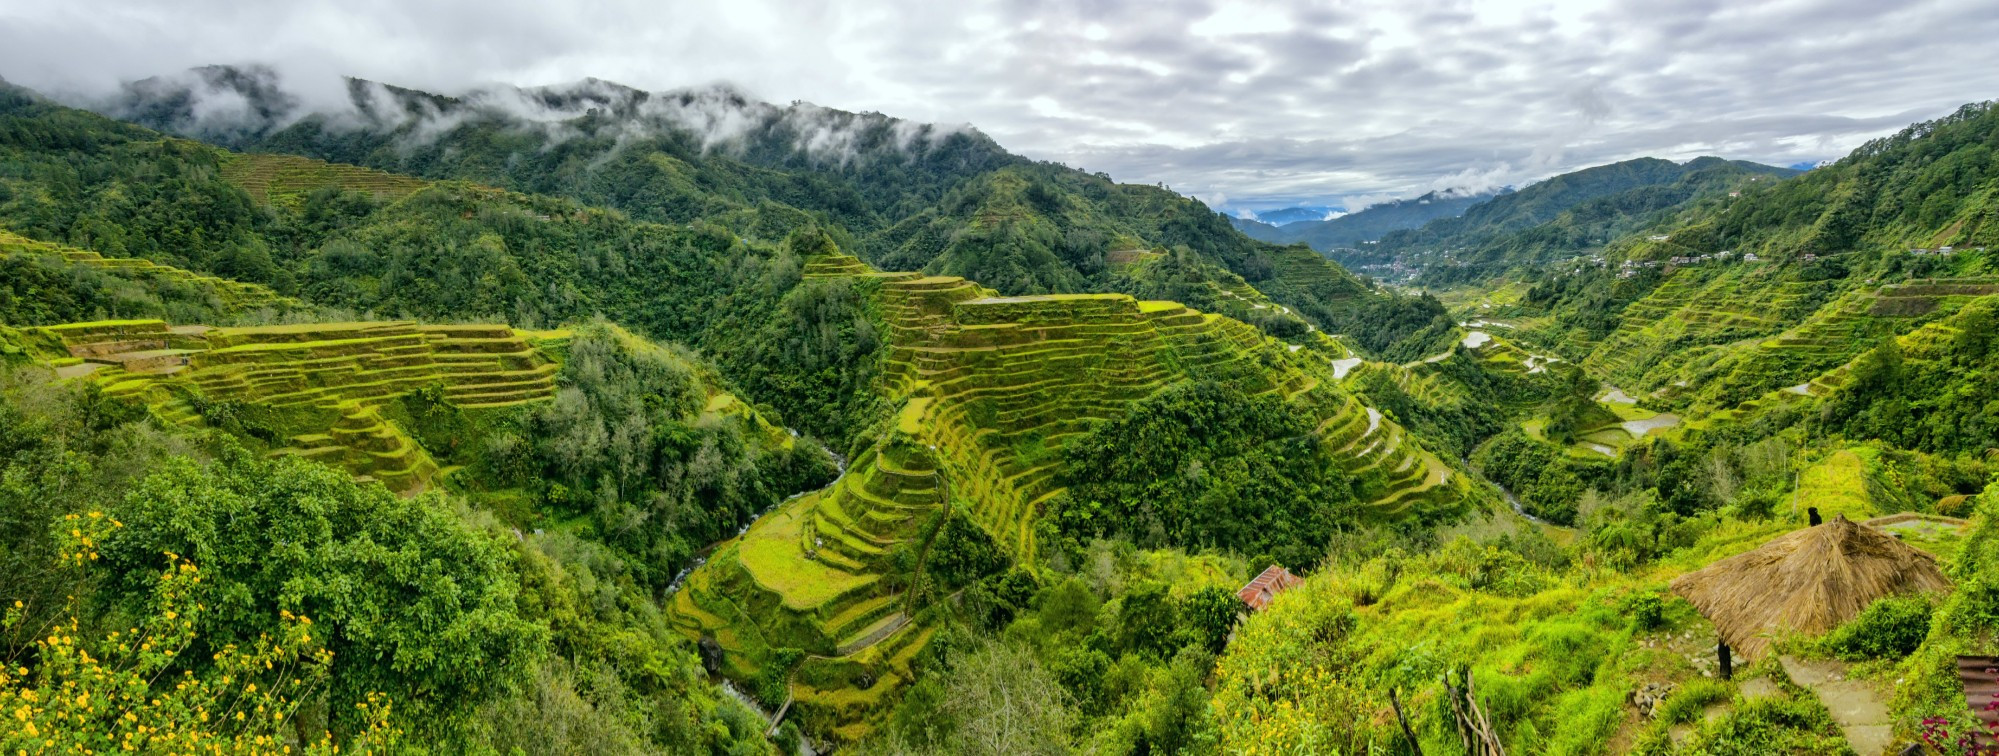 Банауэ. Панорама рисовых террас в Филиппинских Кордильерах.